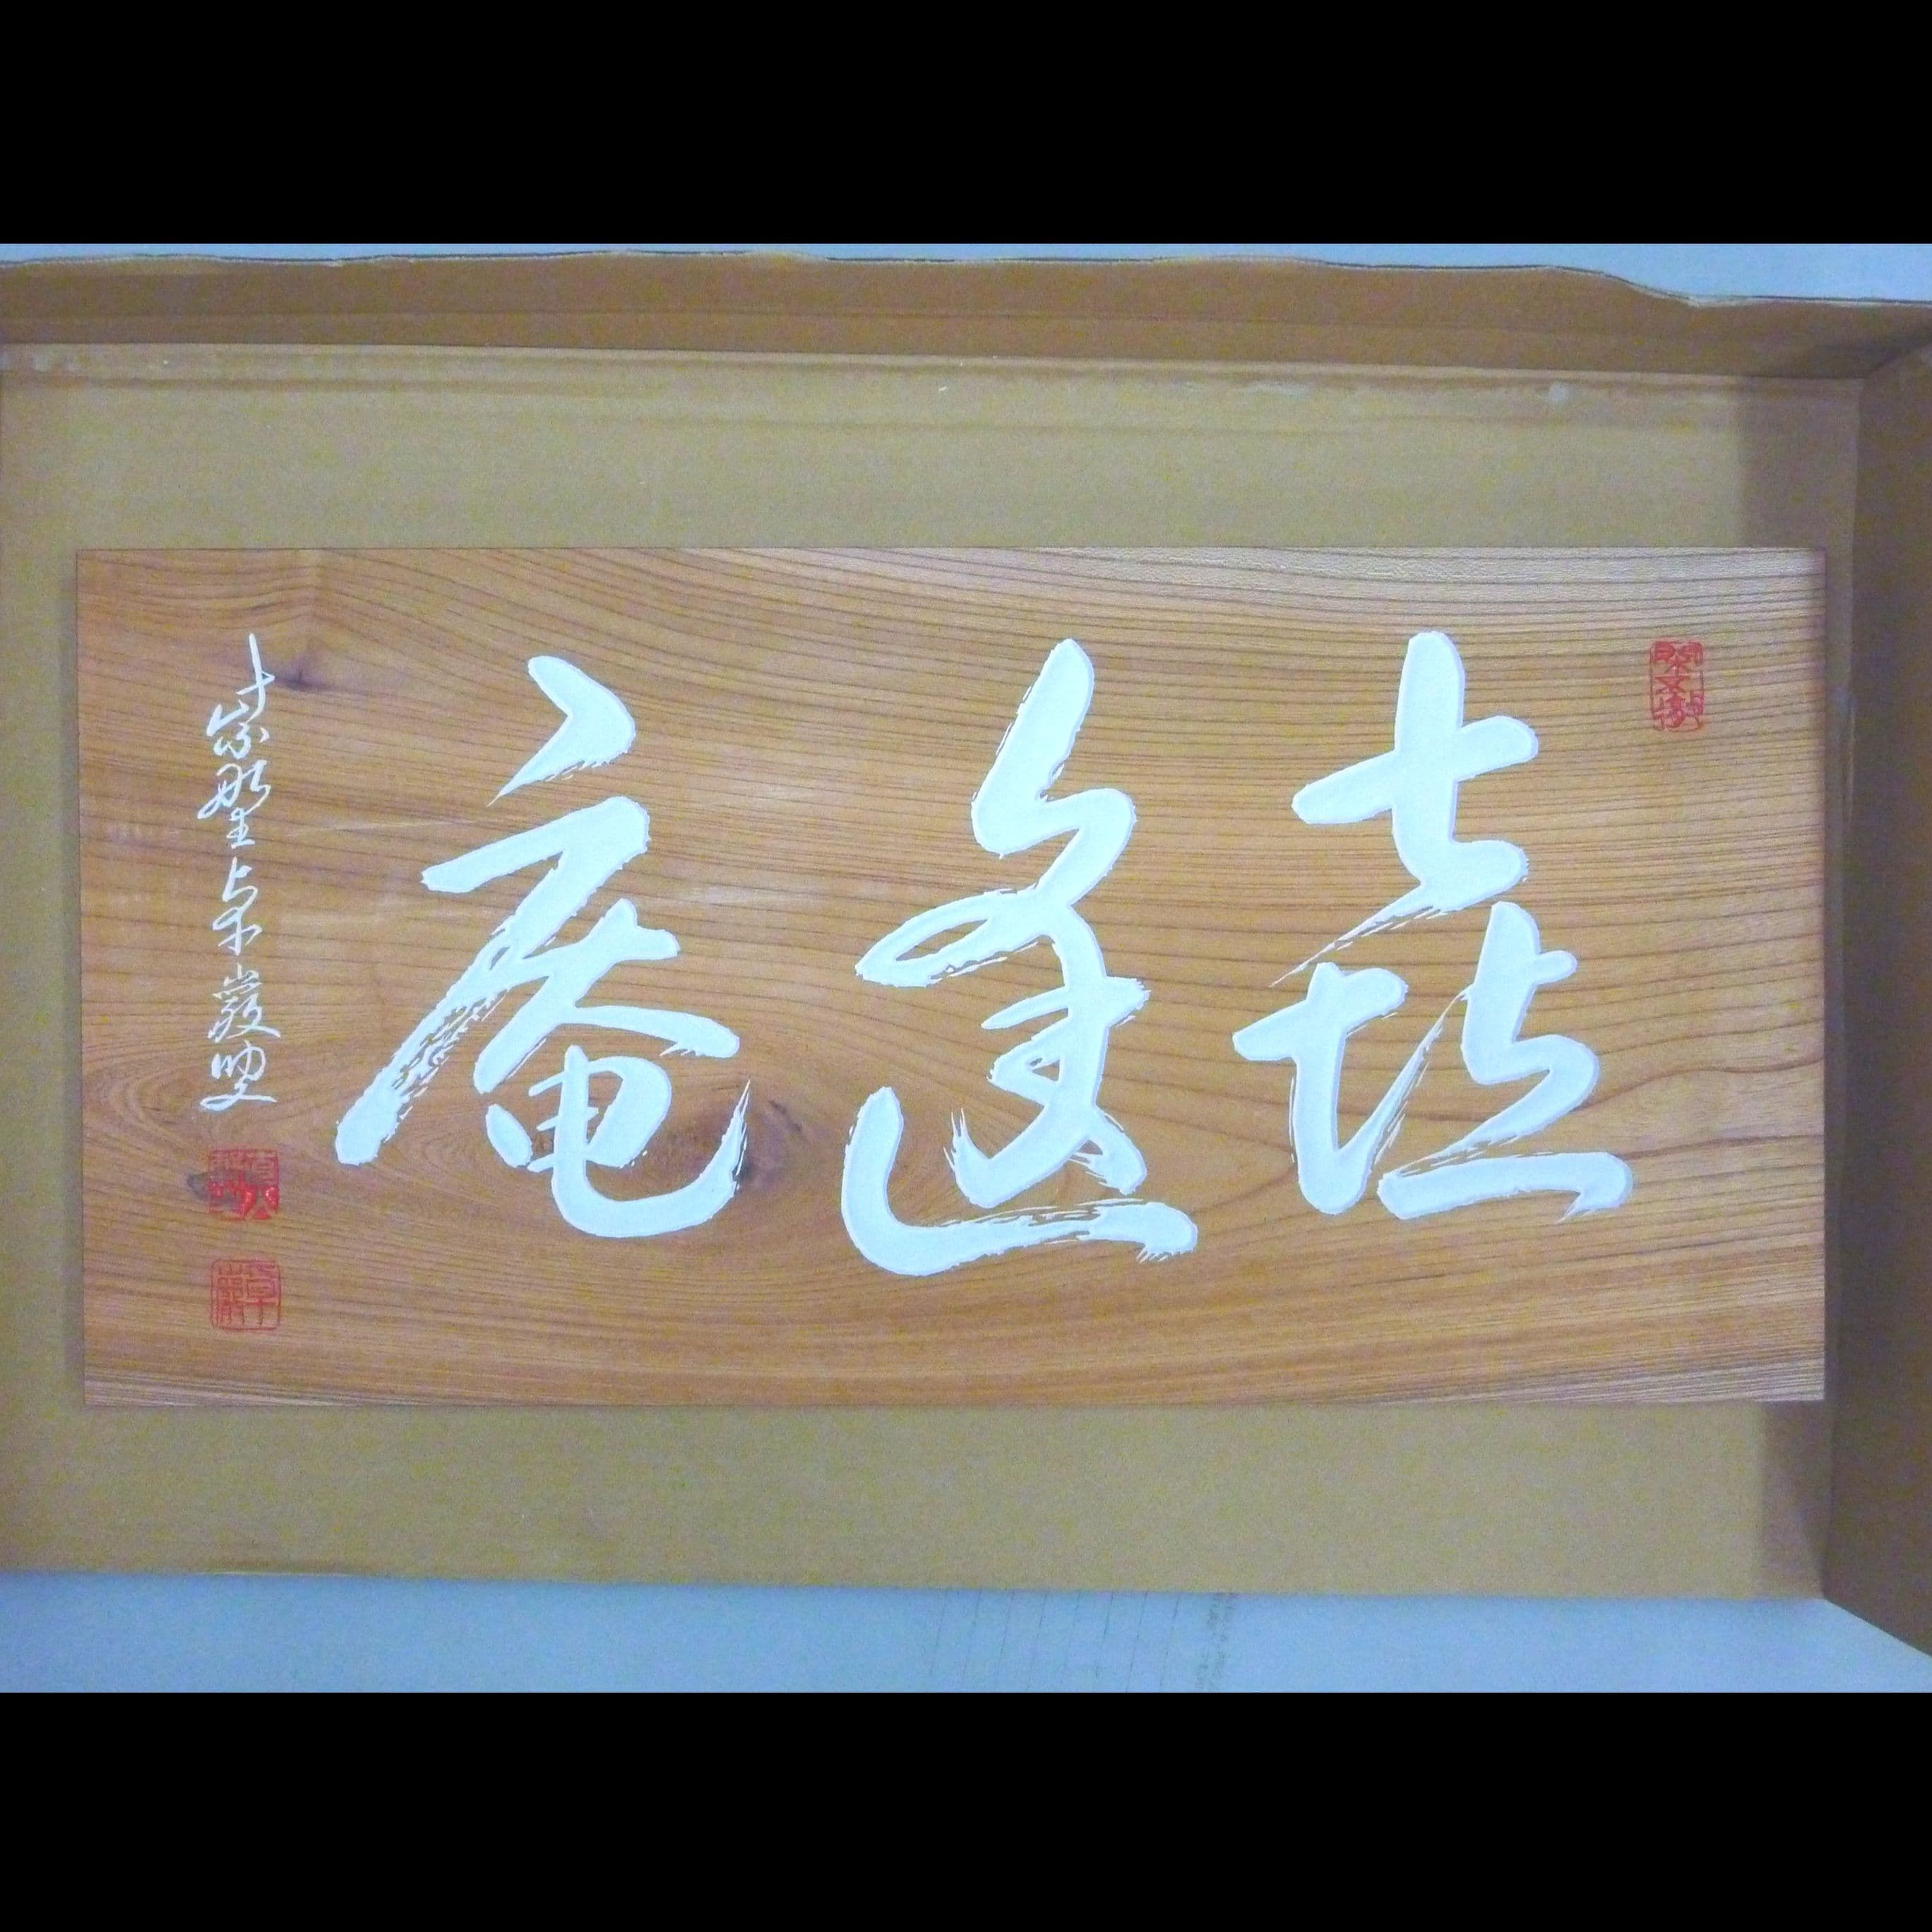 ケヤキの木の板に白い文字で茶室名と落款が書いてある彫刻看板、扁額